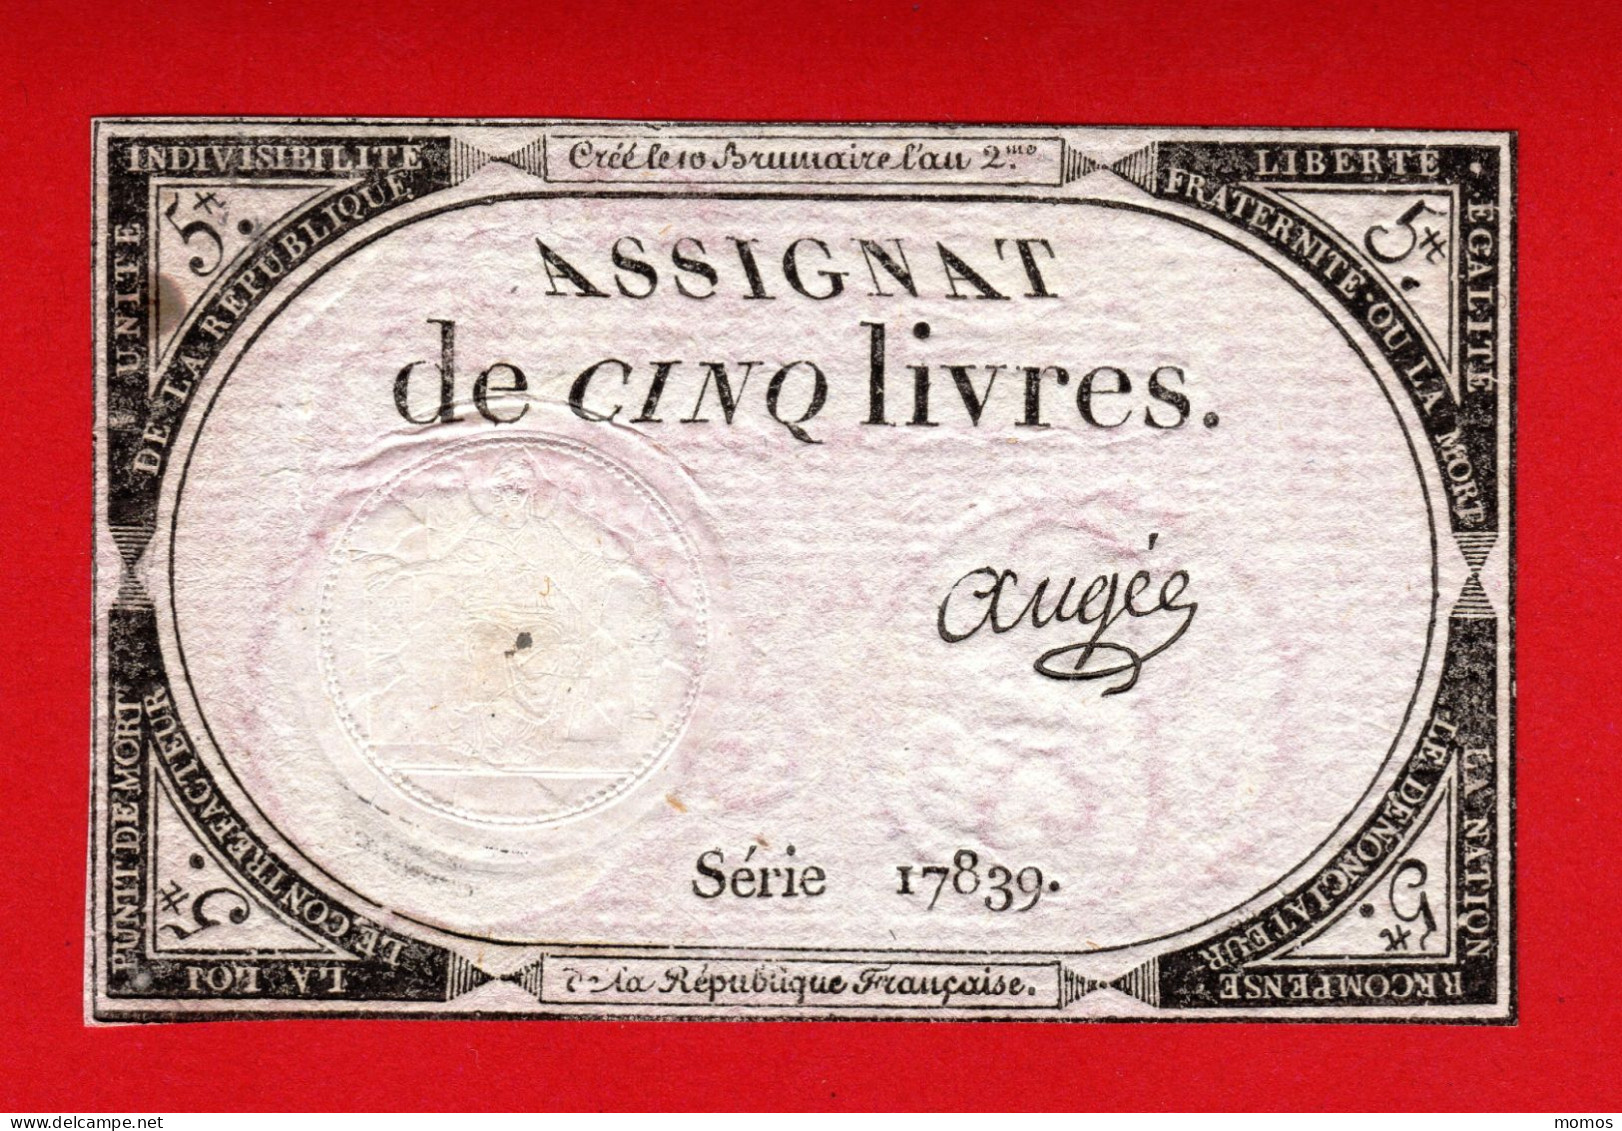 ASSIGNAT DE 5 LIVRES - 10 BRUMAIRE AN 2  (31 OCTOBRE 1793) - AUGEE - REVOLUTION FRANCAISE  D - Assignats